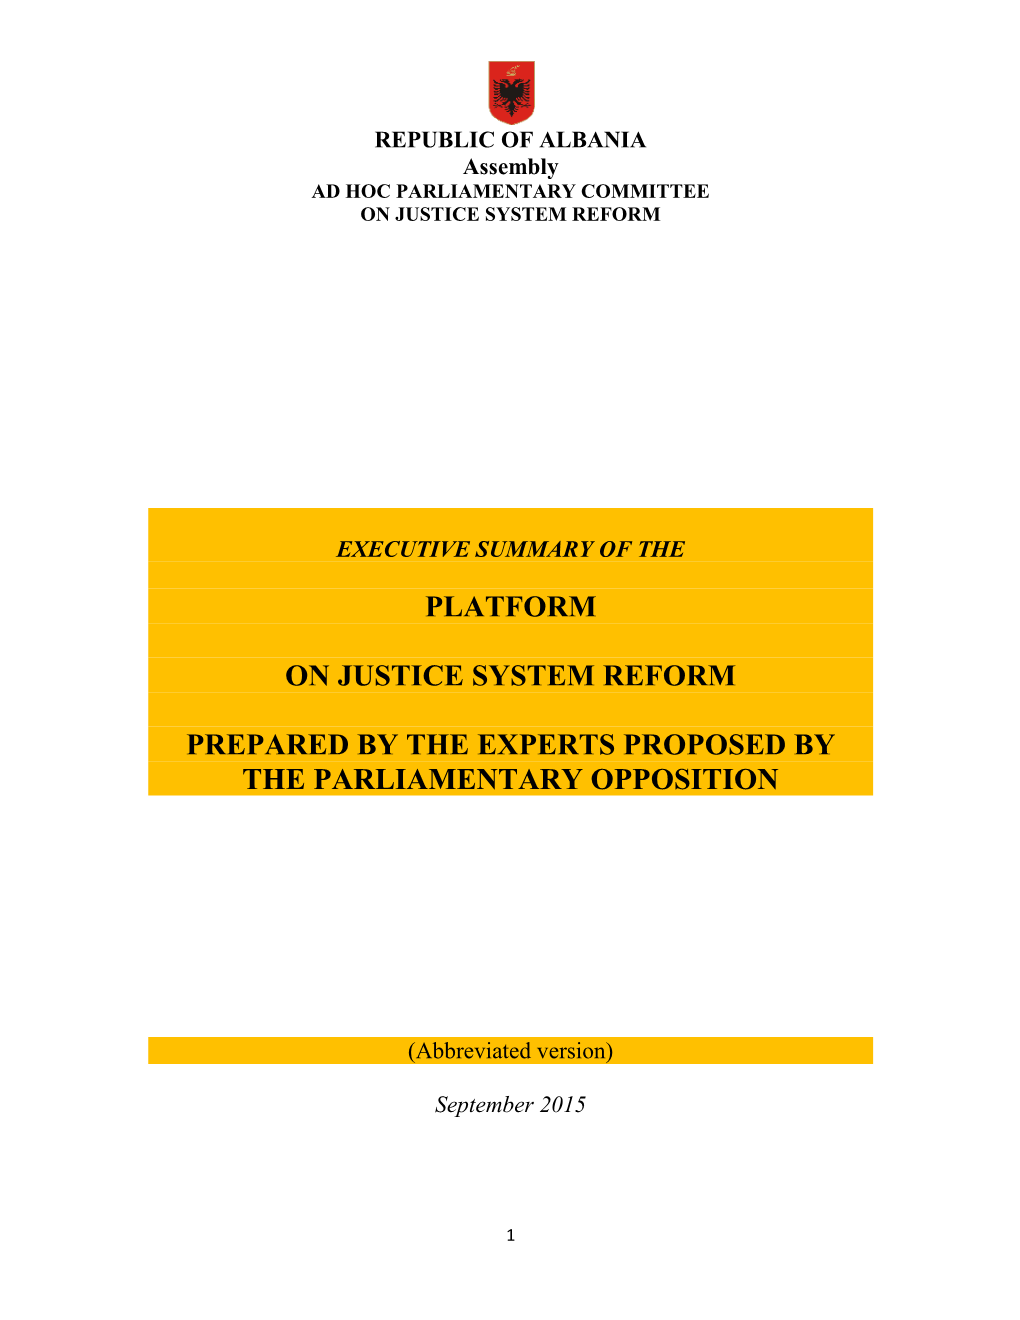 Platform on Justice System Reform Prepared